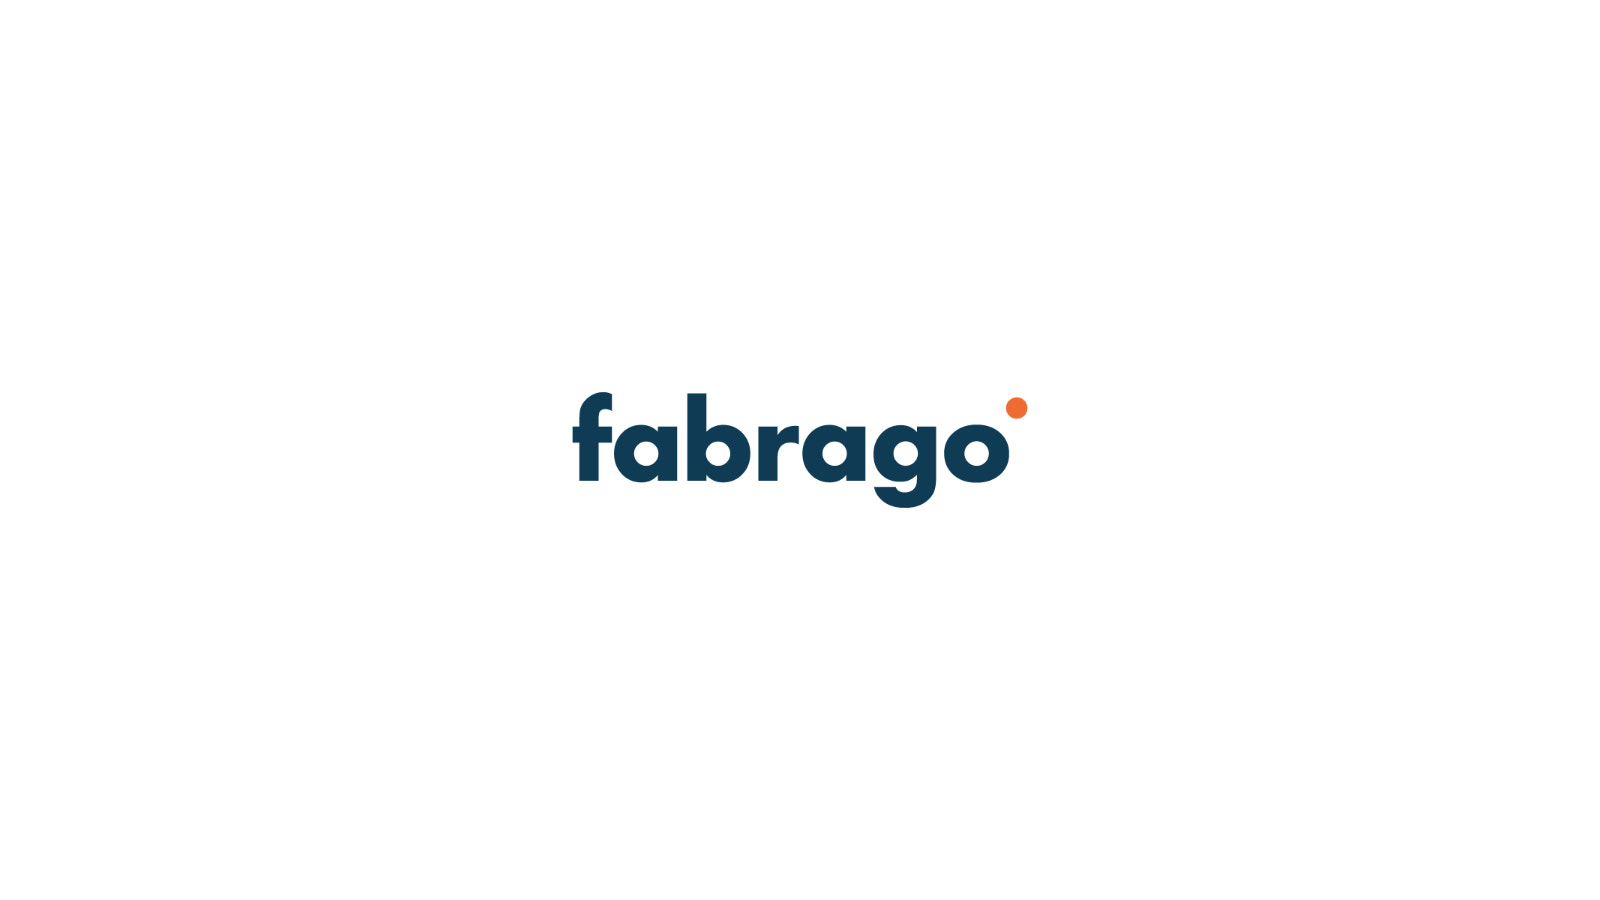 Fabrago App